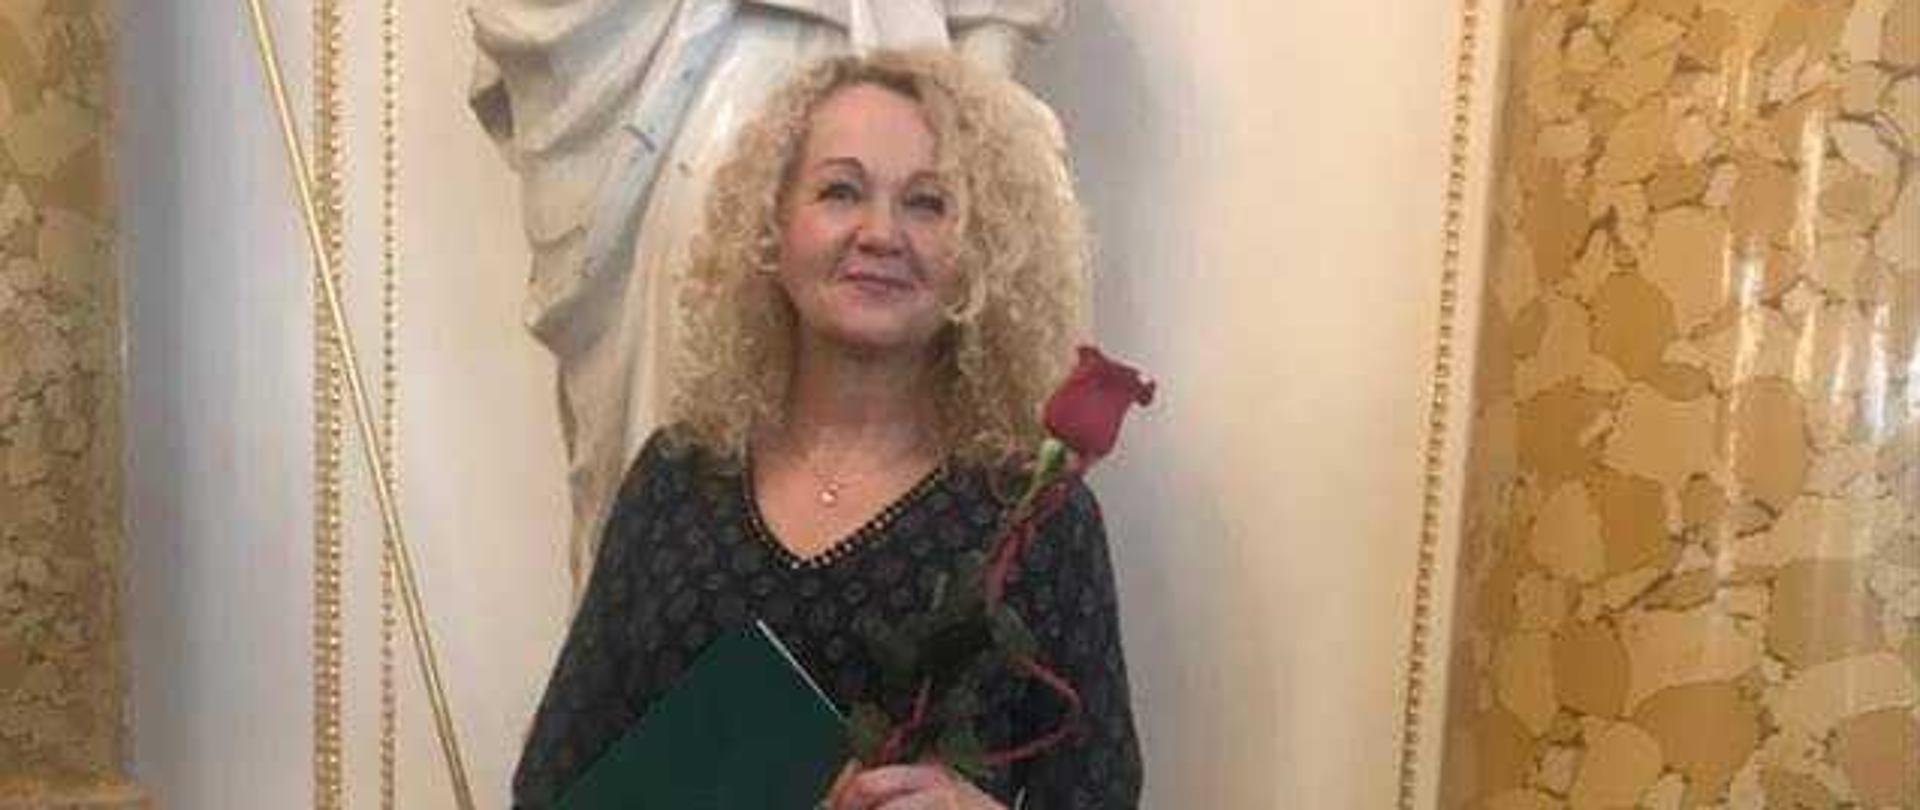 Danuta Gościńska stoi, w ręku trzyma nagrodę i czerwoną różę.